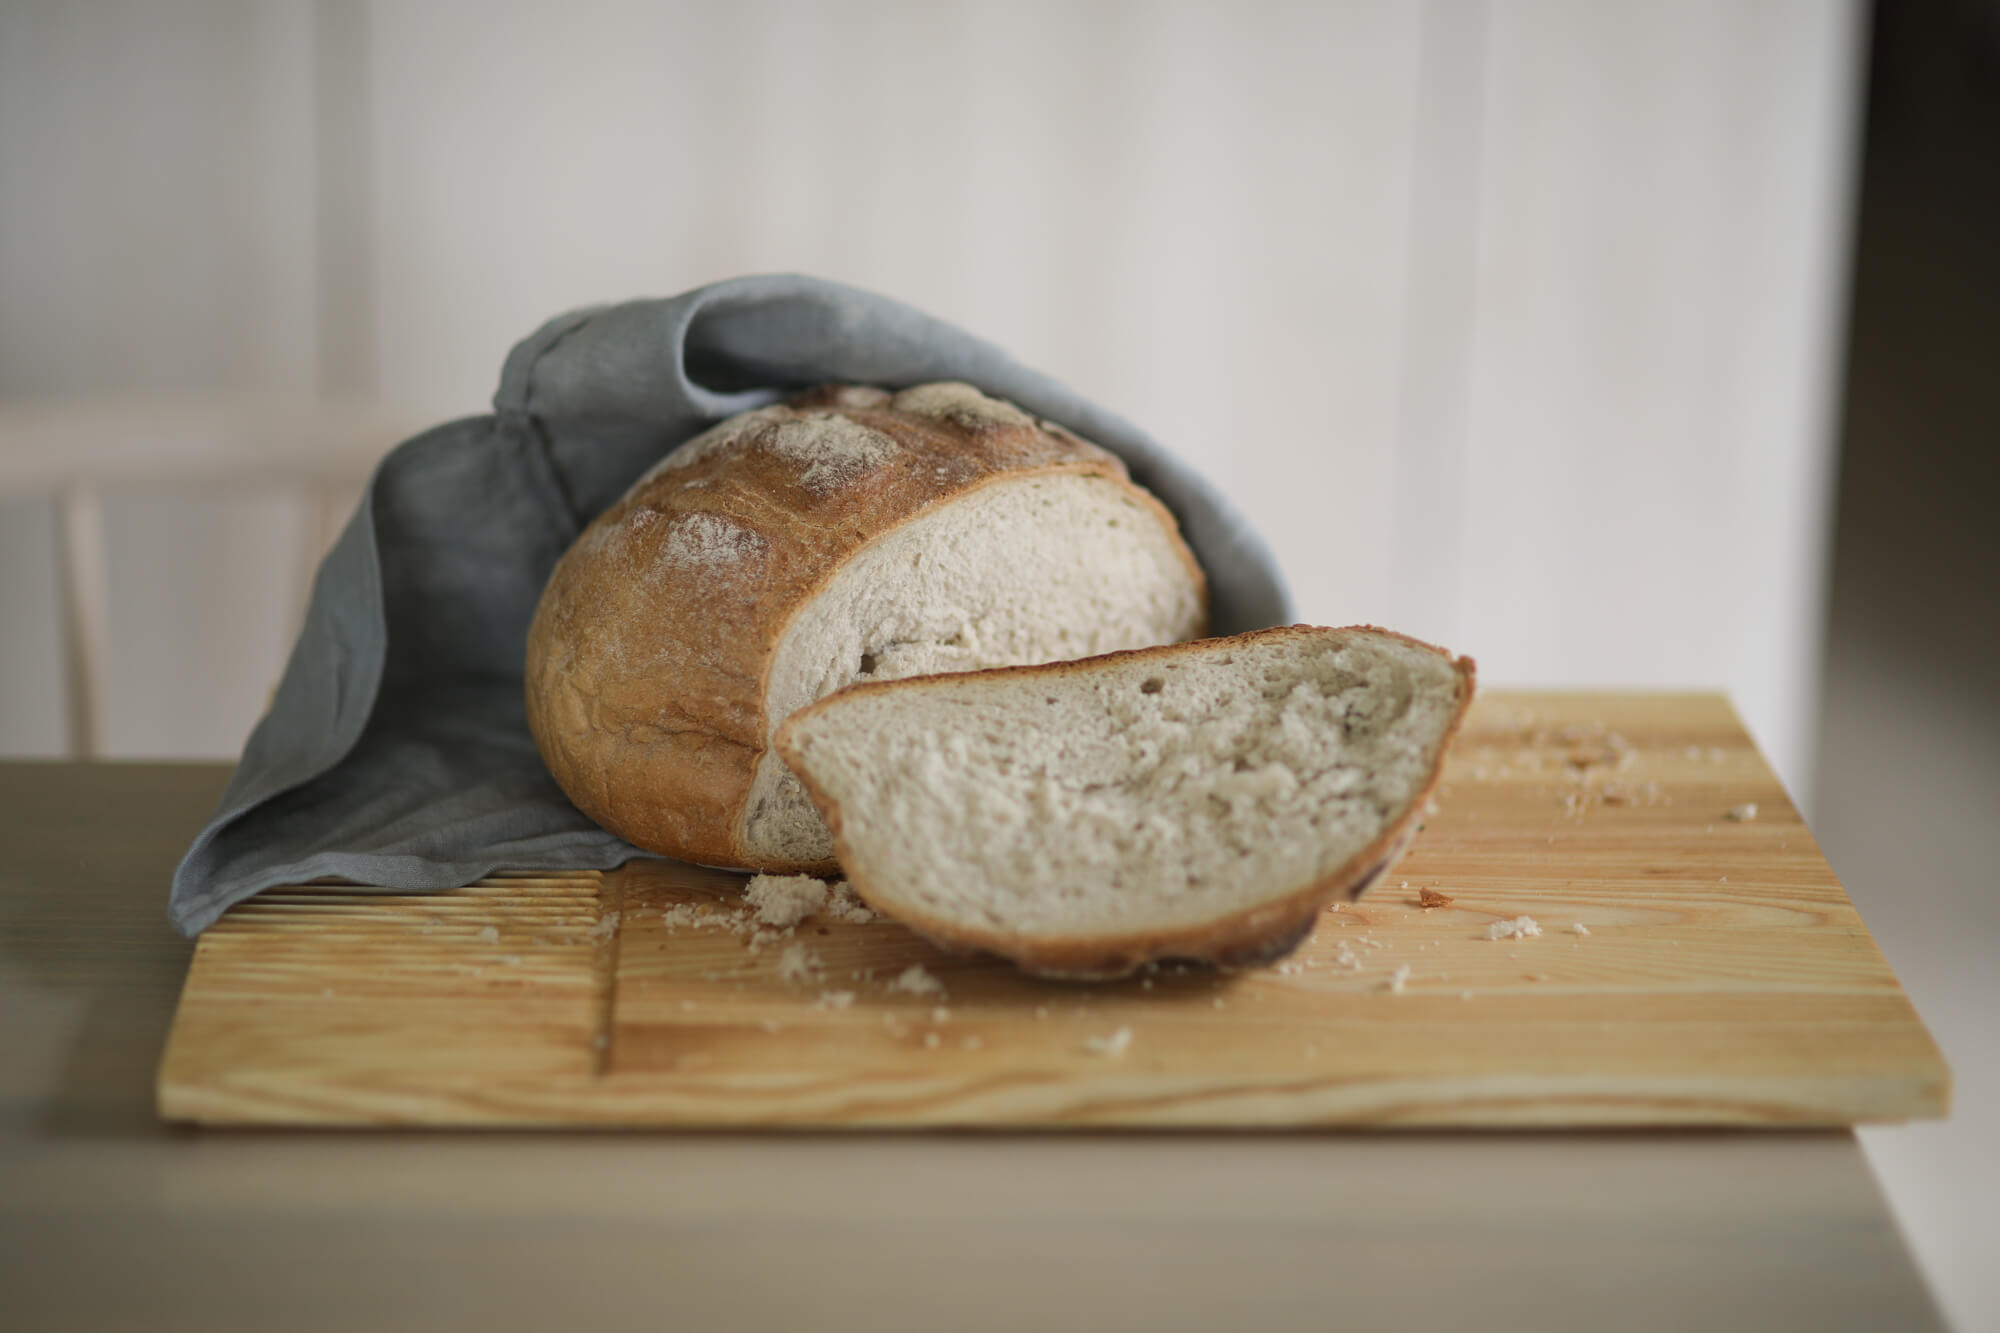 Na desce do krojenia i serwowania Fields leży ukrojony kawałek chleba owiniętego w lniany worek.